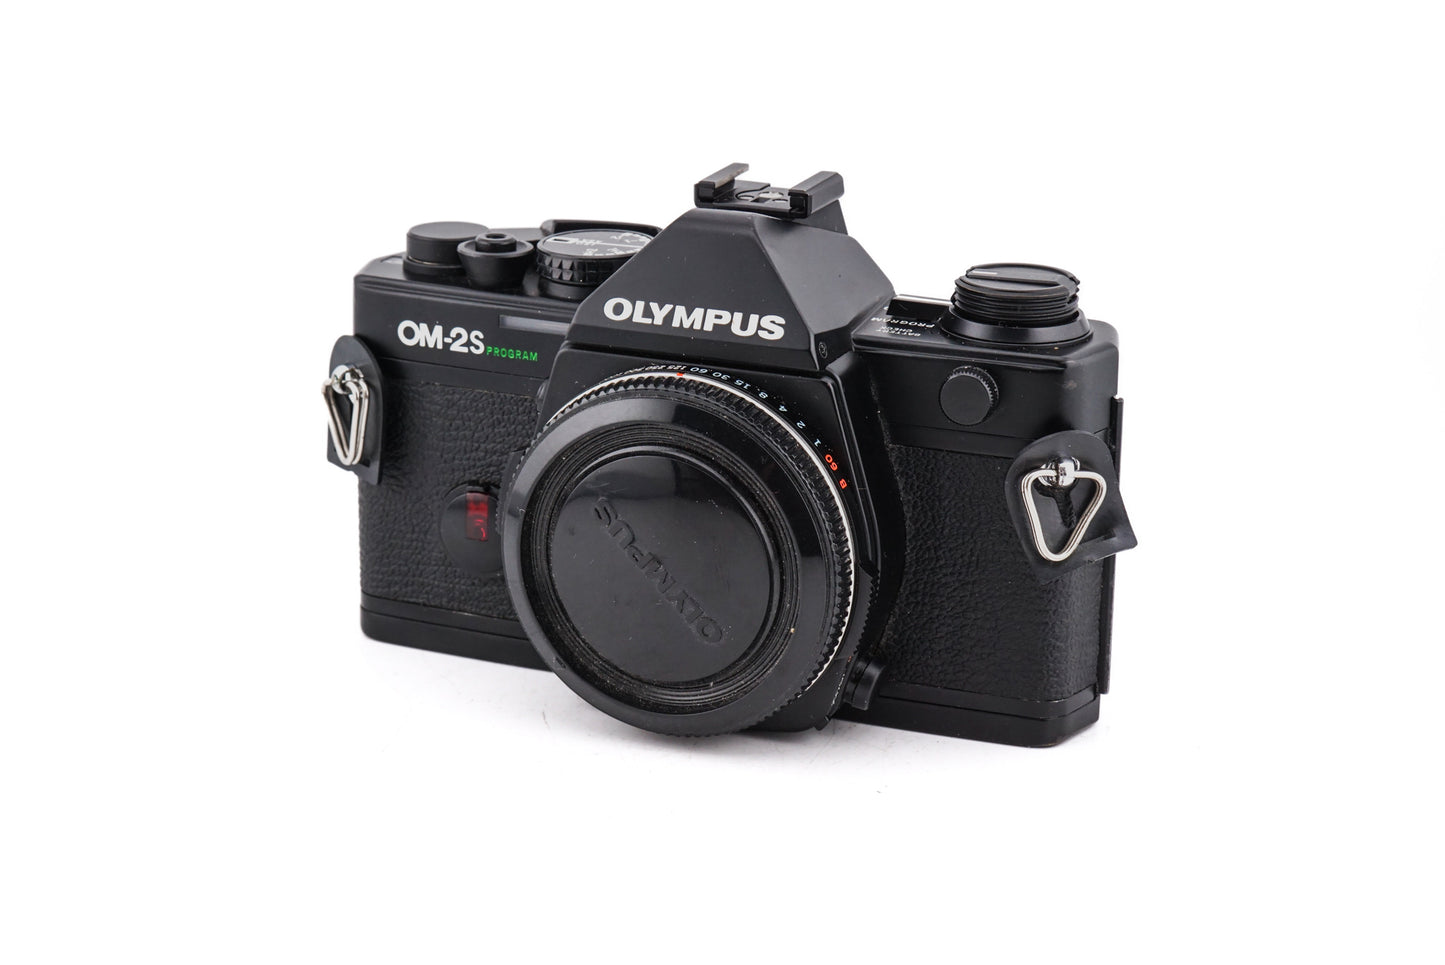 Olympus OM-2 Spot/Program - Camera